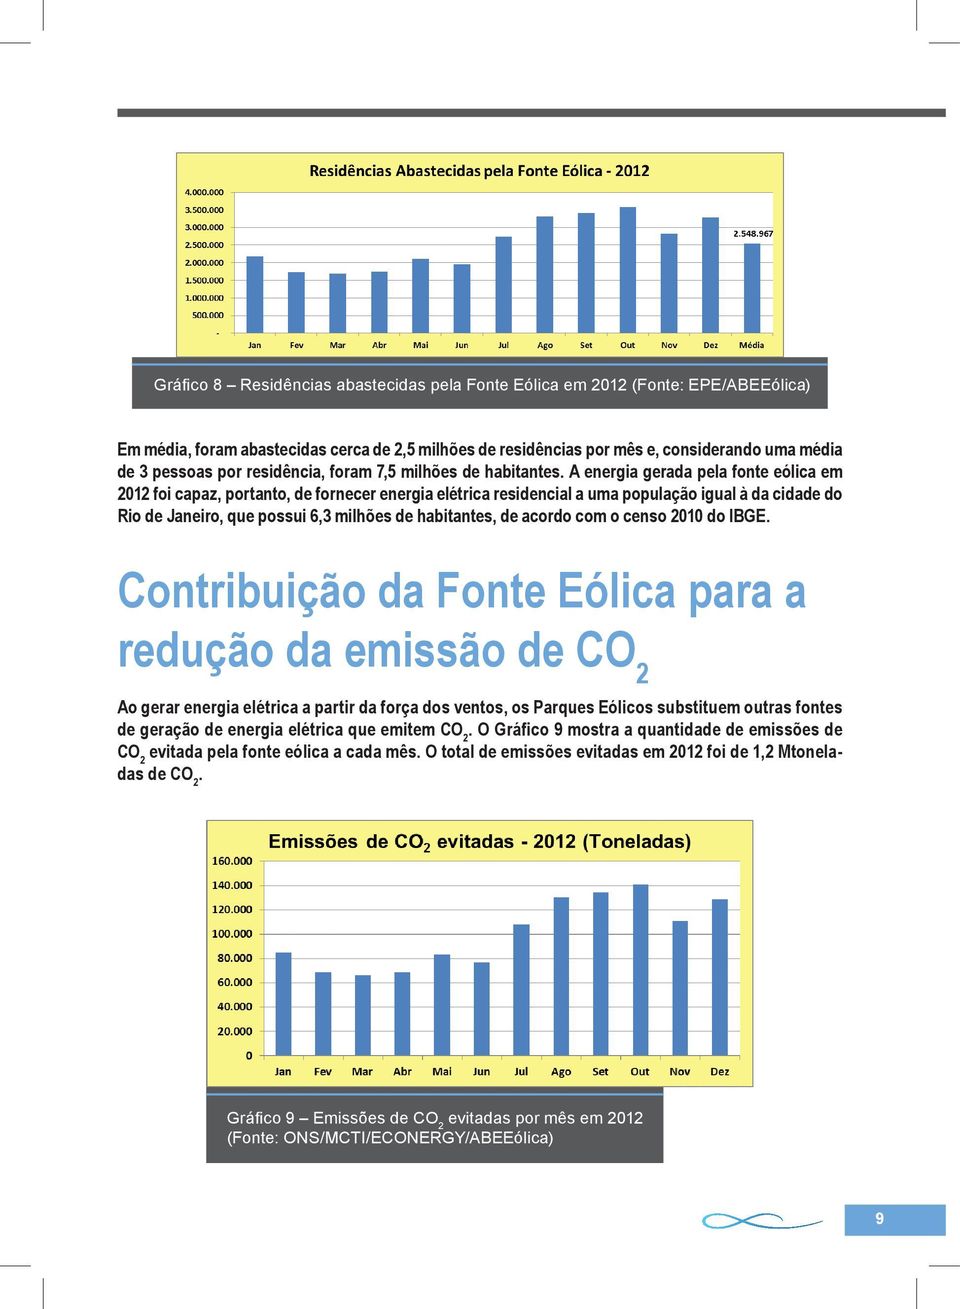 A energia gerada pela fonte eólica em 2012 foi capaz, portanto, de fornecer energia elétrica residencial a uma população igual à da cidade do Rio de Janeiro, que possui 6,3 milhões de habitantes, de